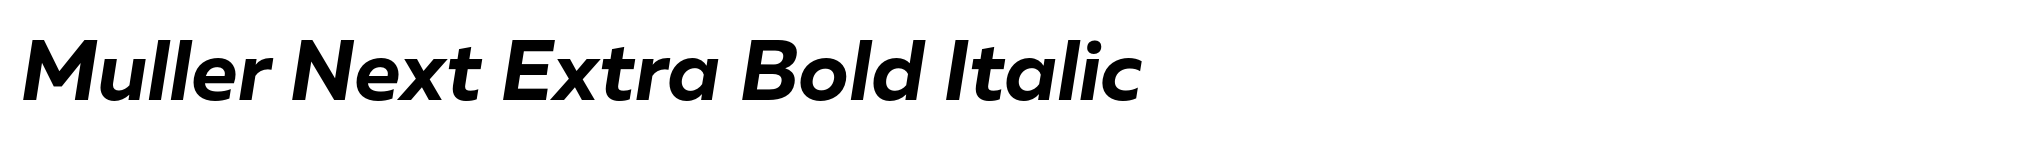 Muller Next Extra Bold Italic image